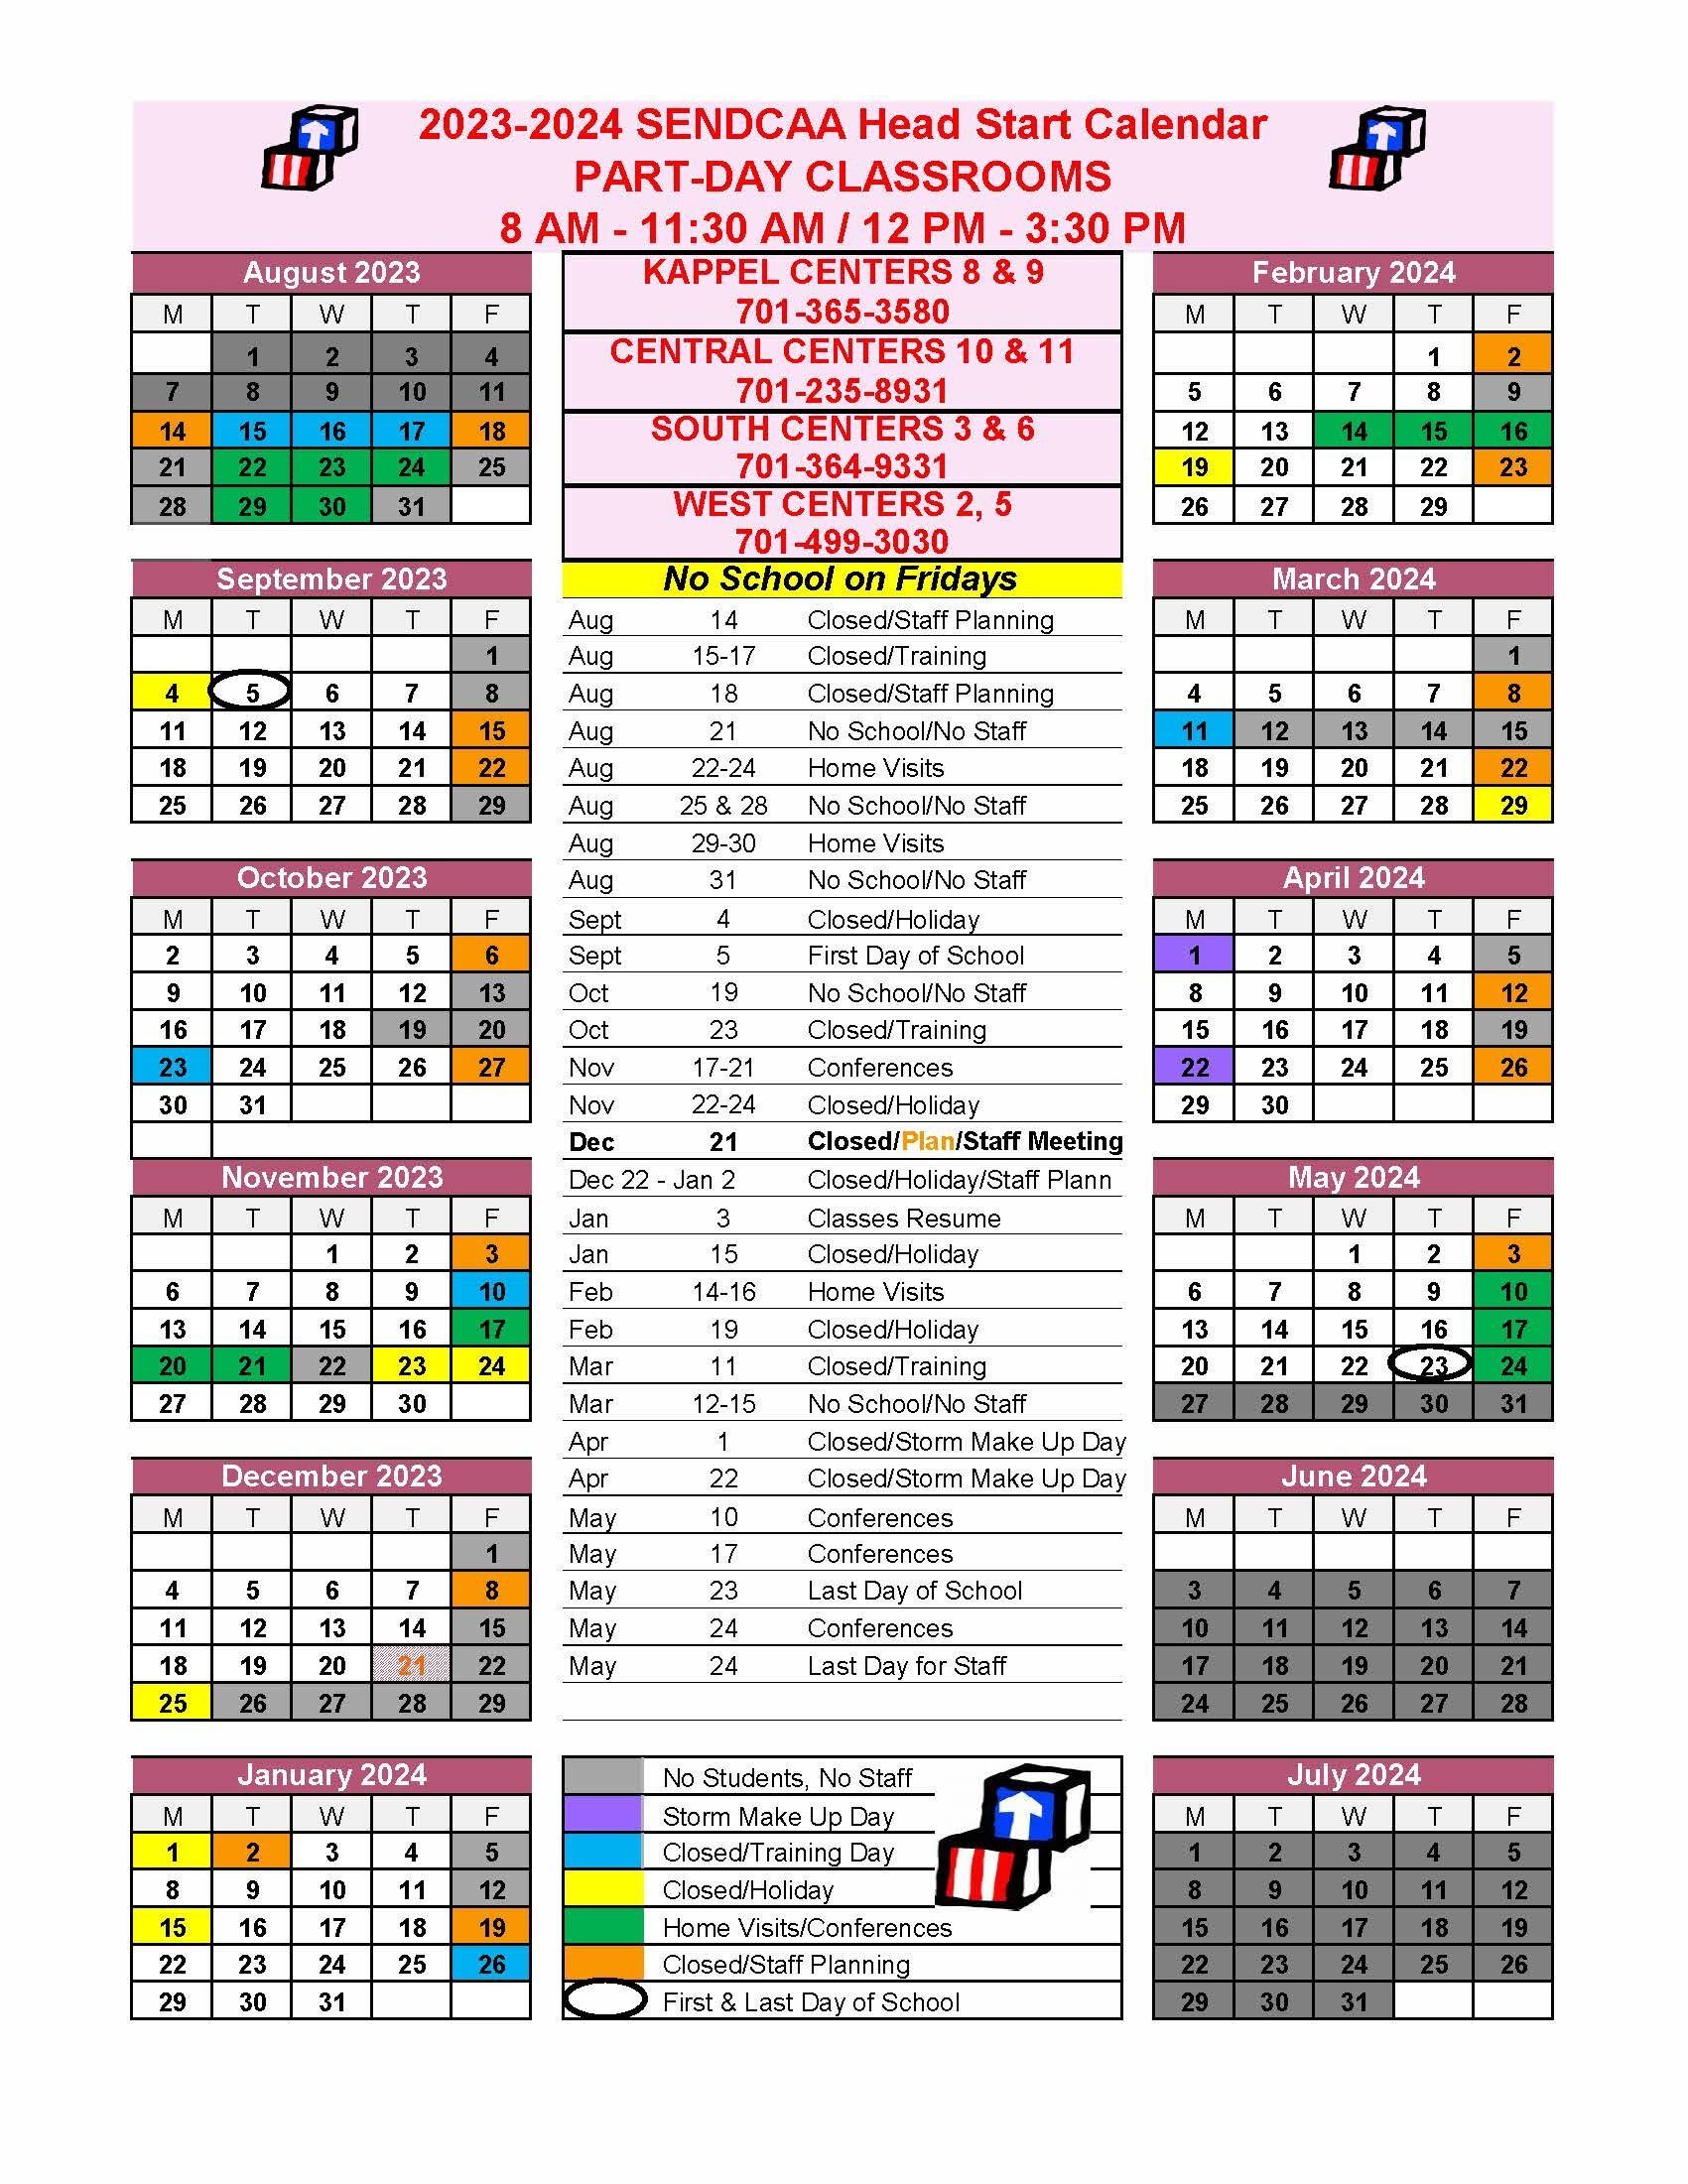 2023-2024 Fargo Part-Day Calendar